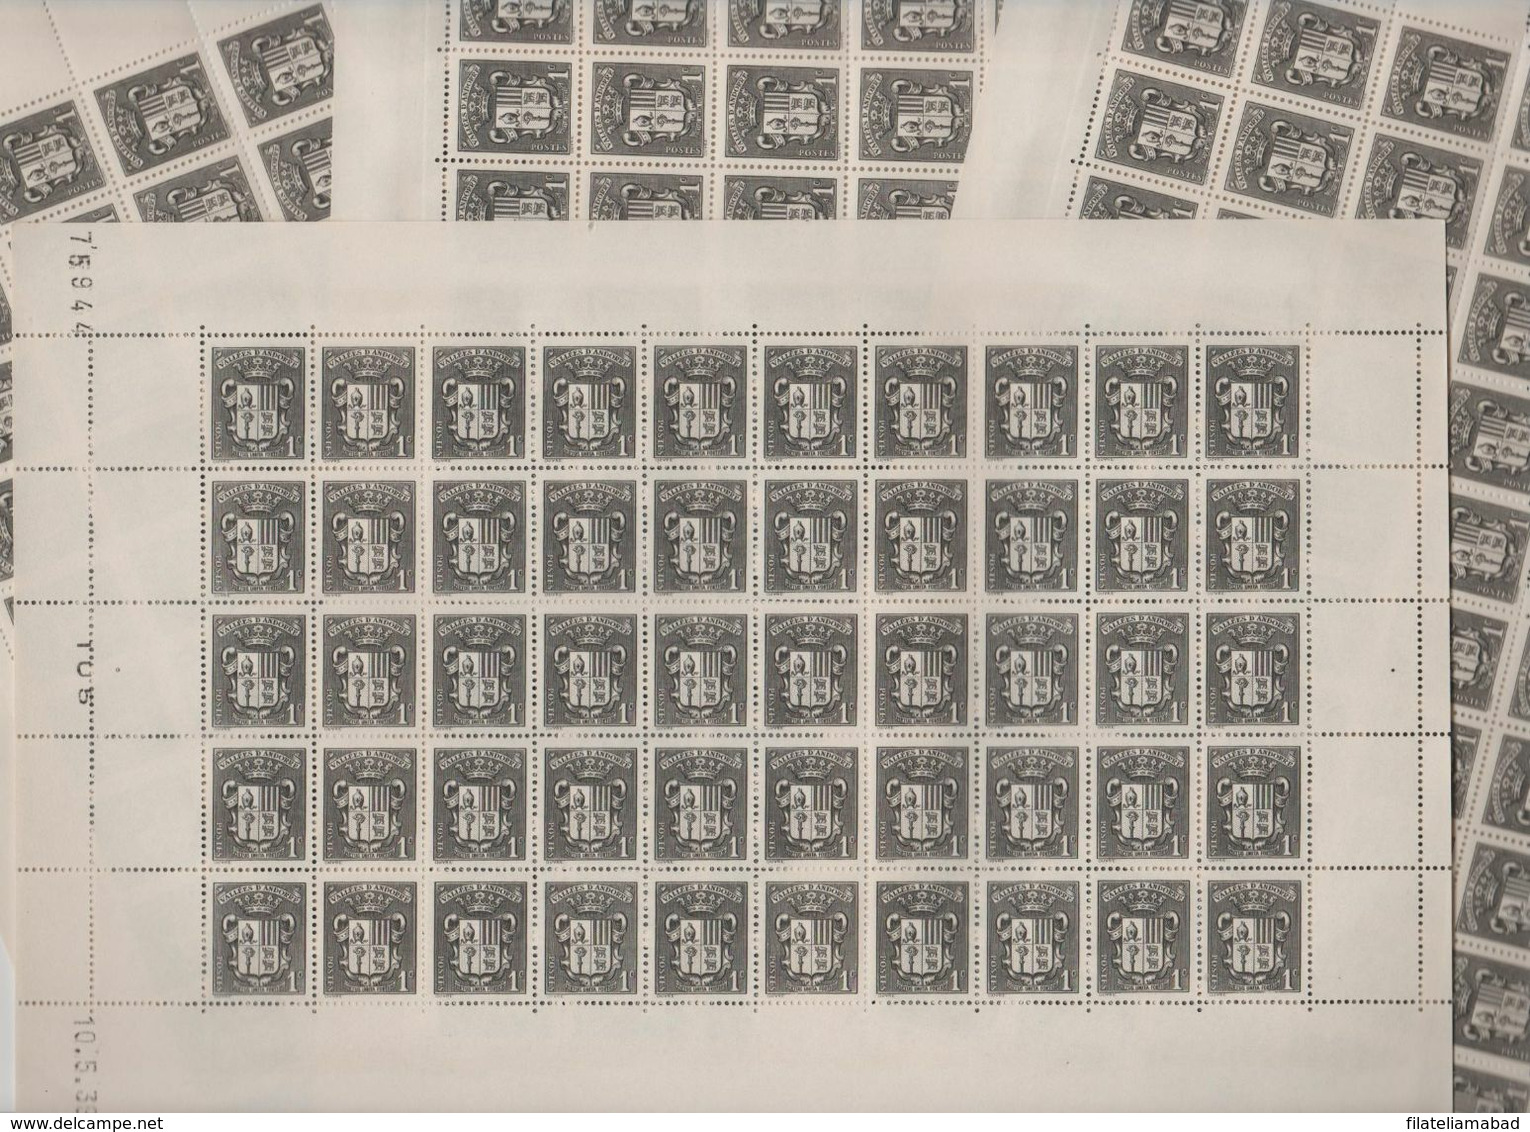 ANDORRA CORREO F..200 SELLOS Nº 47 DEL AÑO 1937-43 EN MUY NUEN ESTADO C. 100,00€  (C.H) - Blocks & Kleinbögen